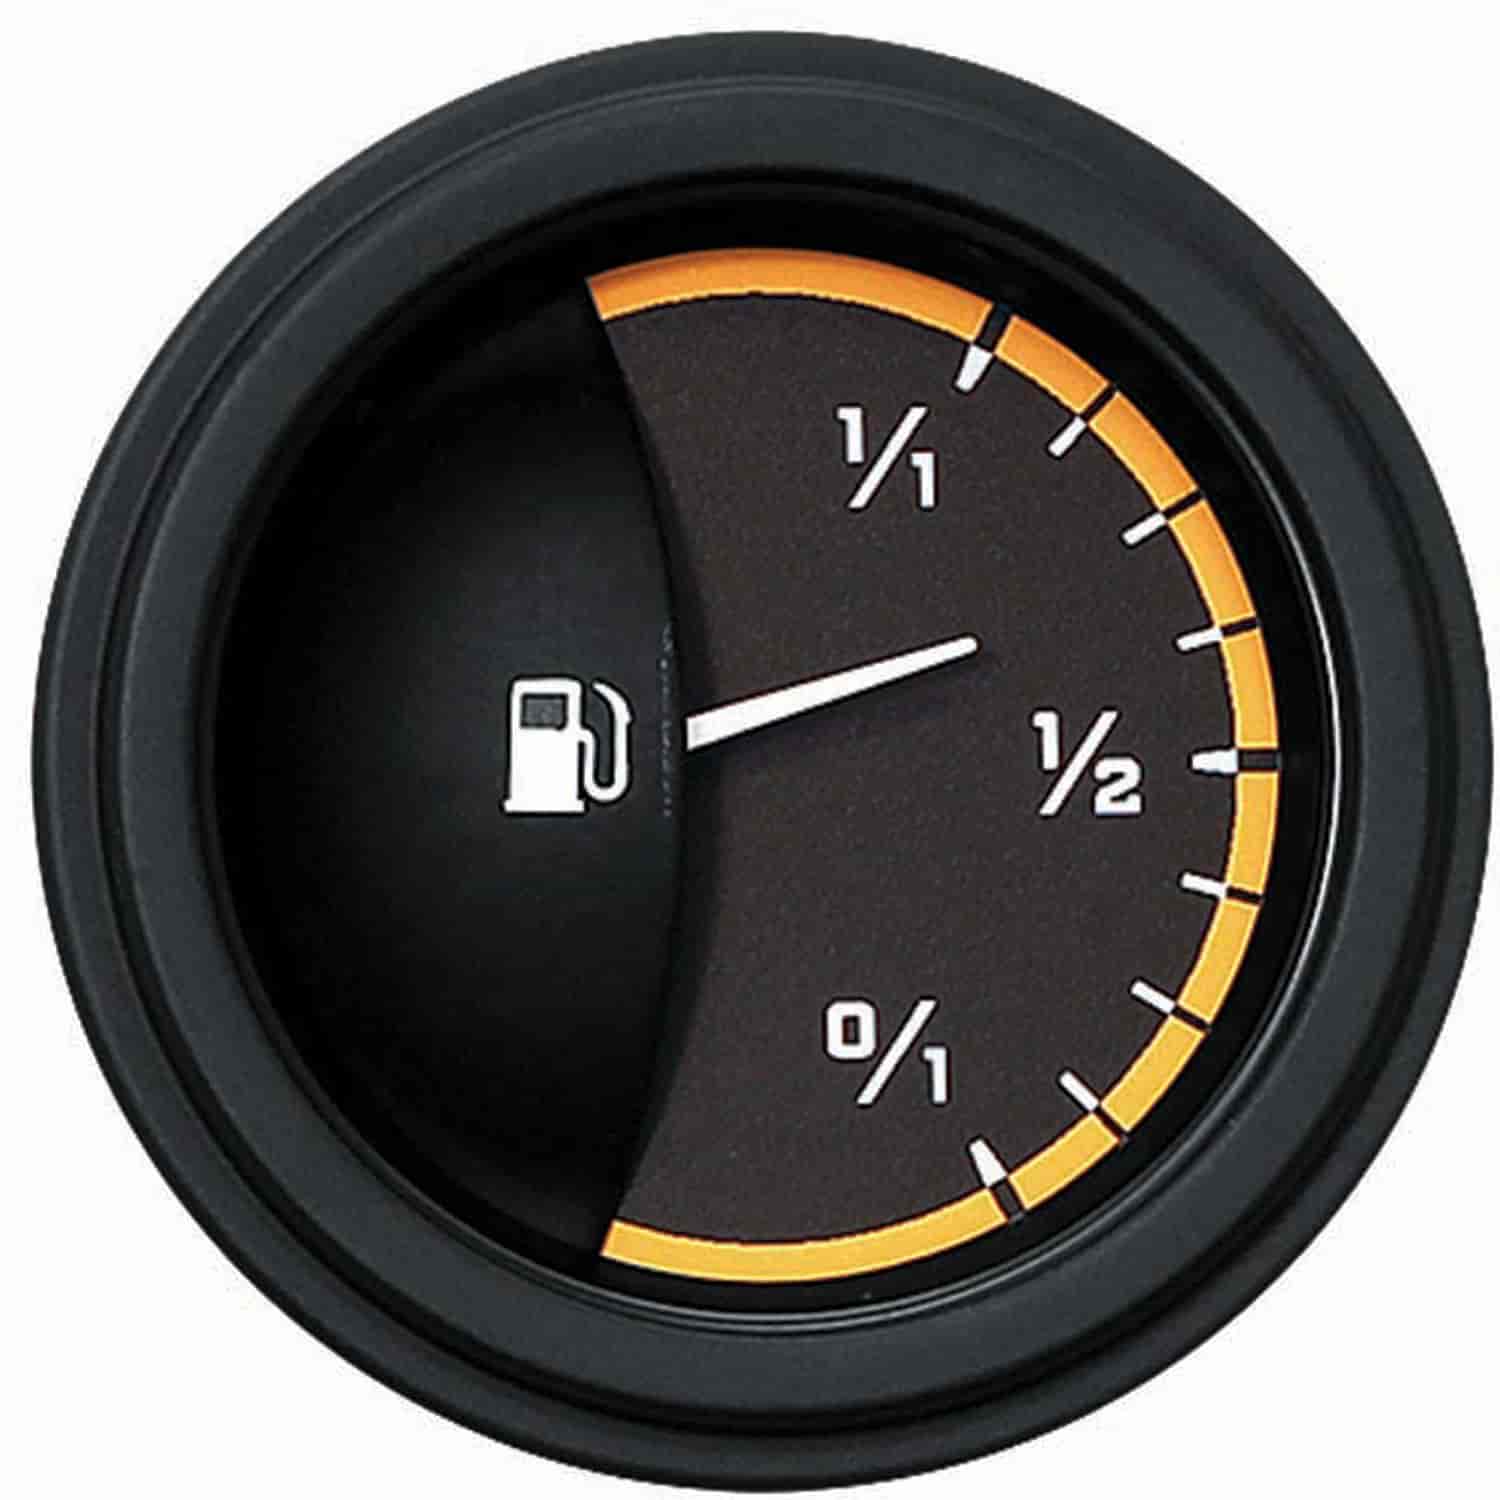 Yellow AutoCross Series Fuel Gauge 2-1/8